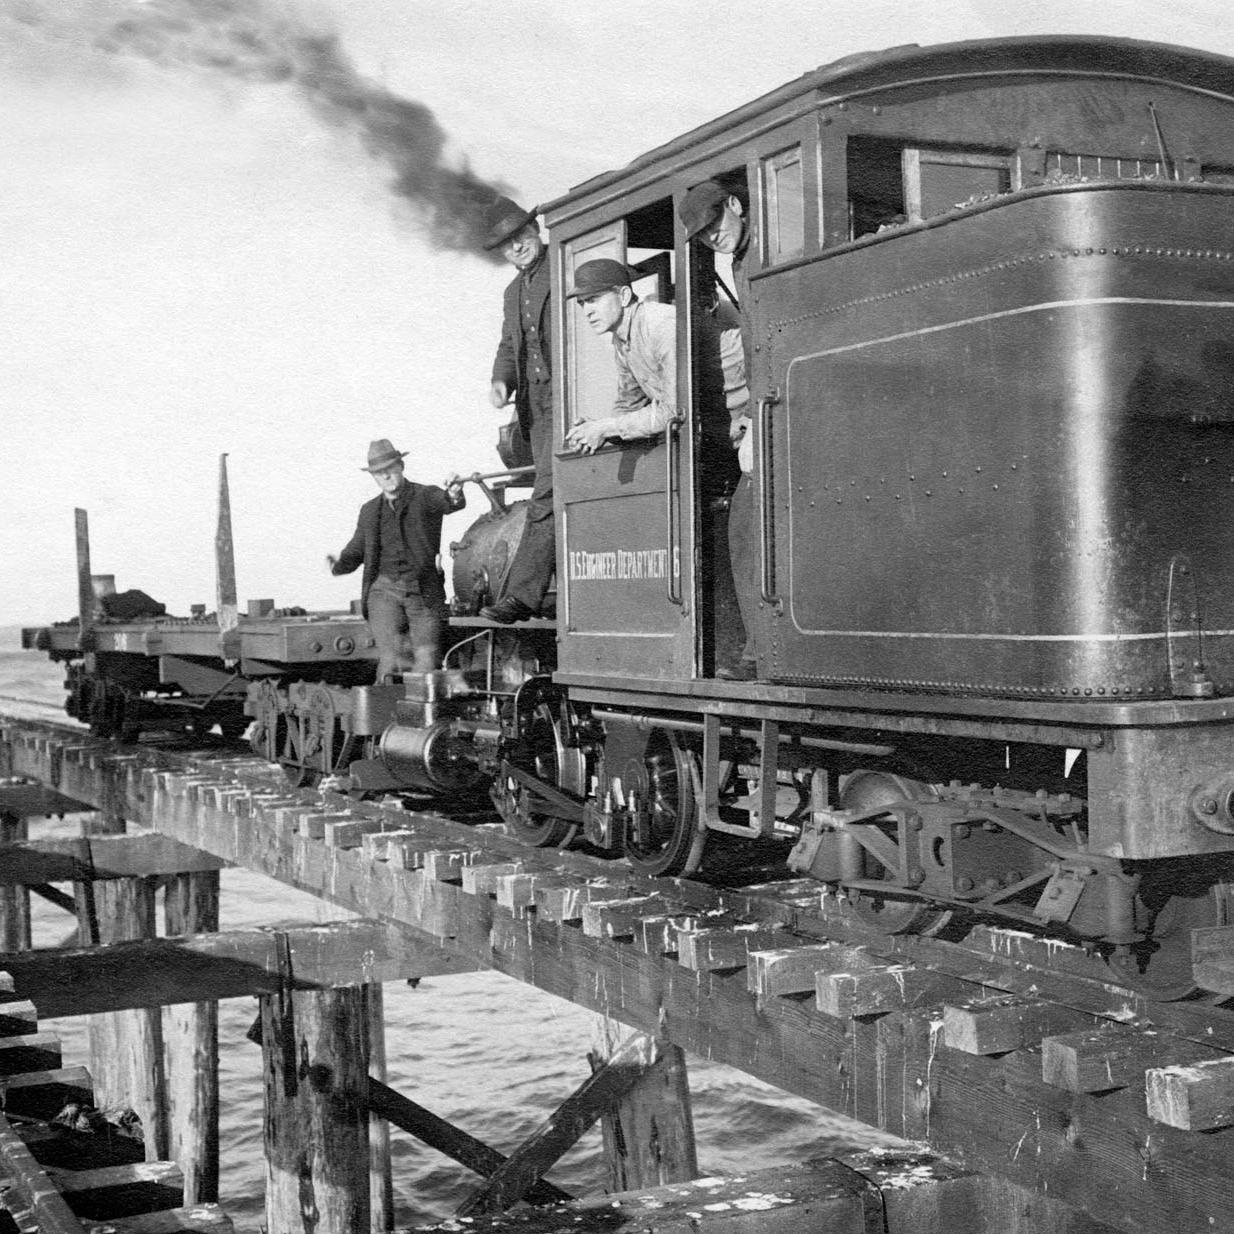 Columbia River Jetty Railroad 0-4-4T #6